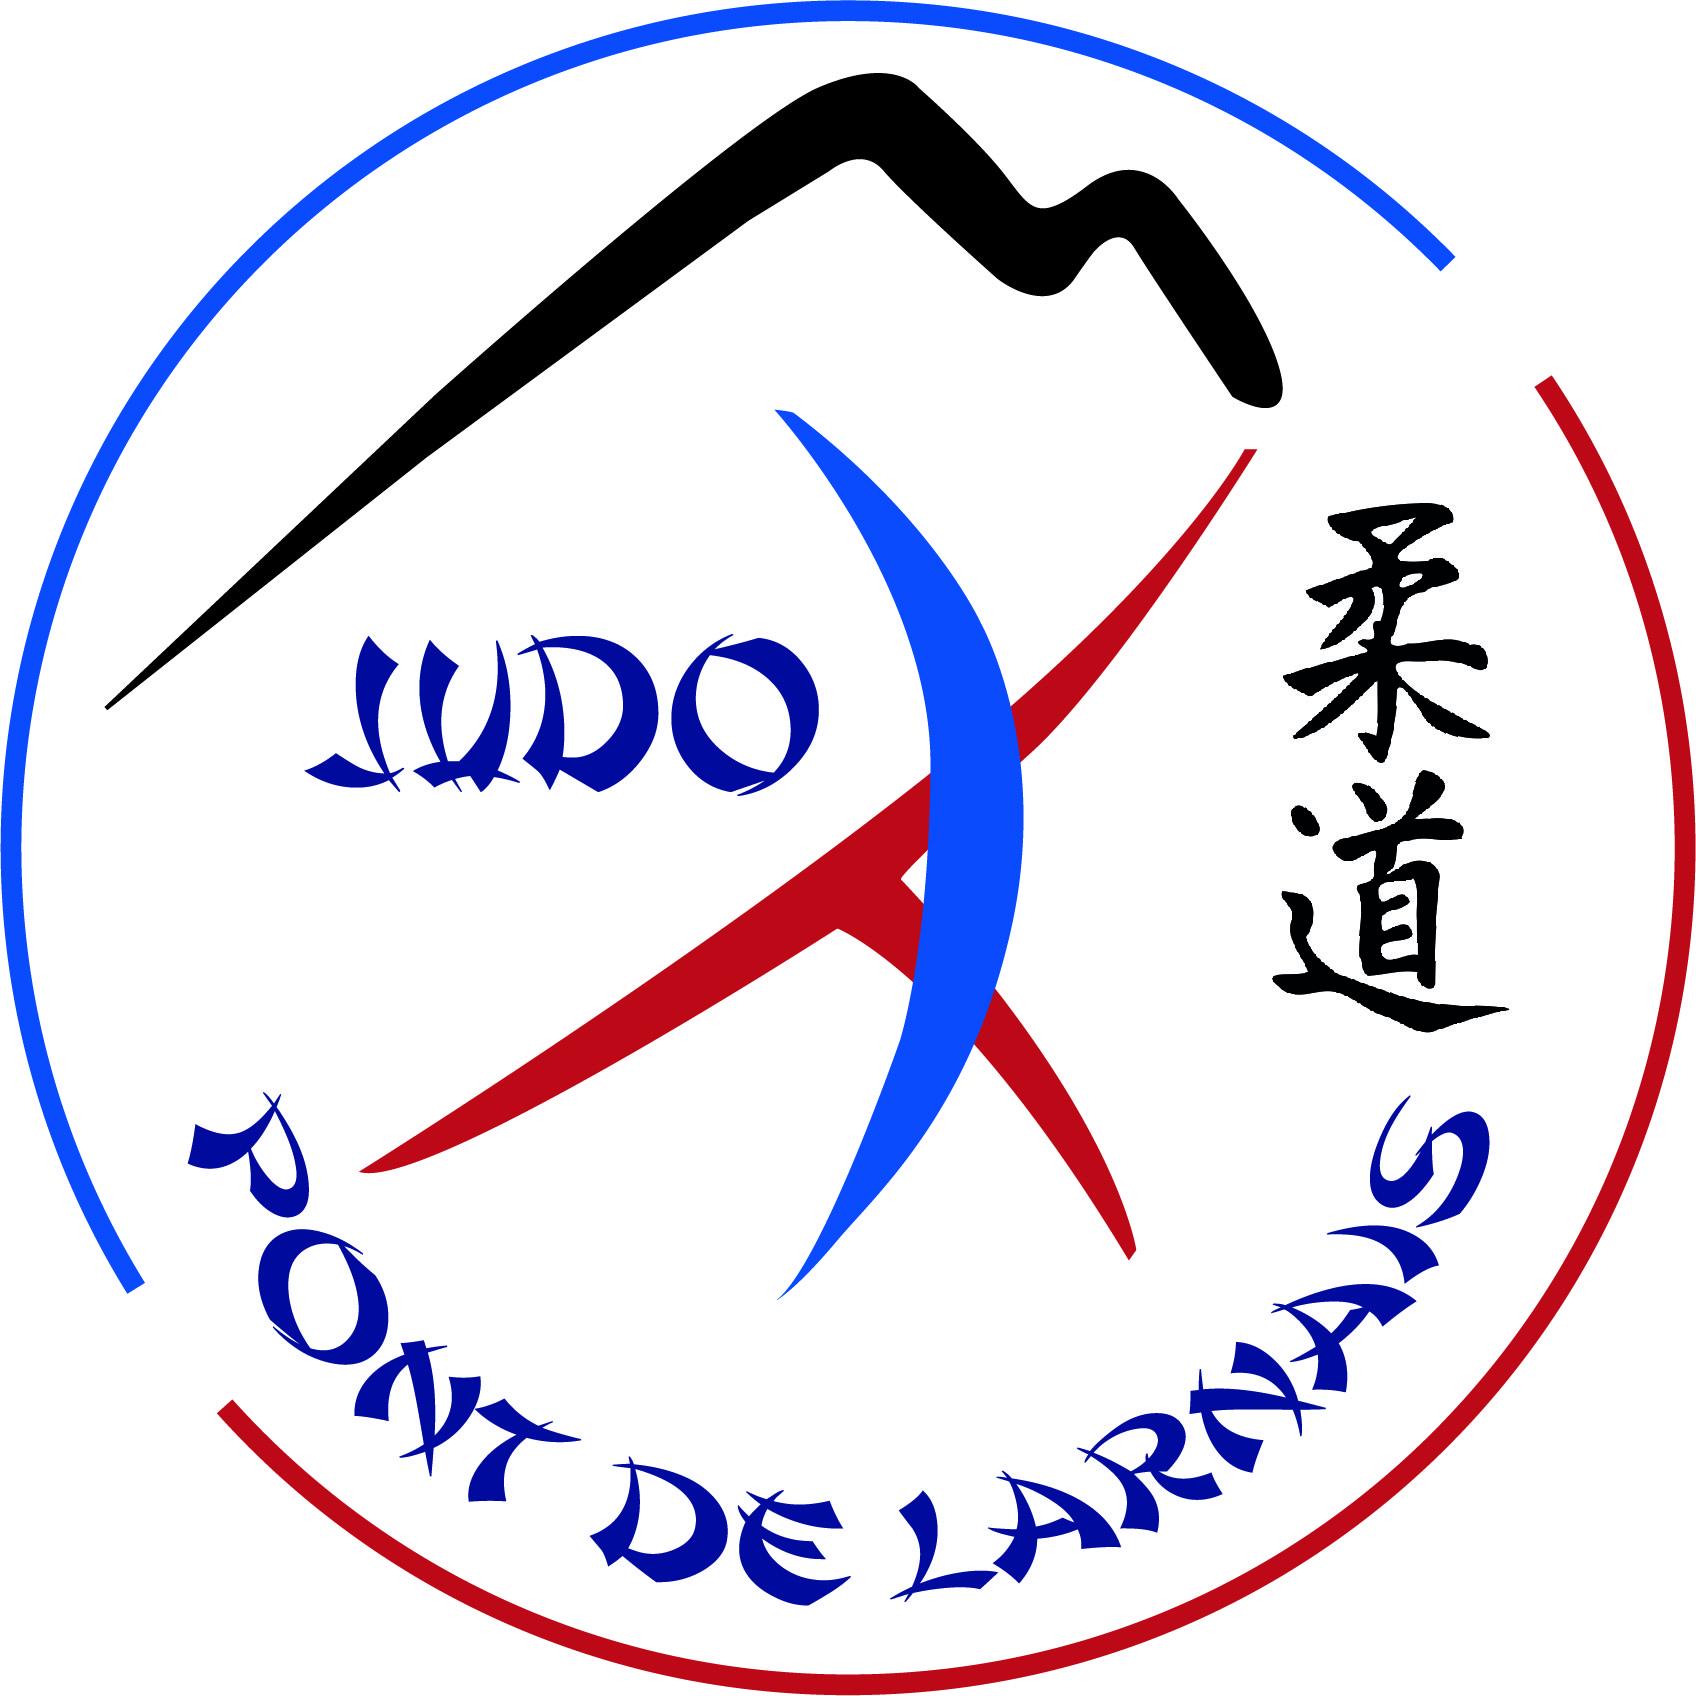 Logo final jpeg